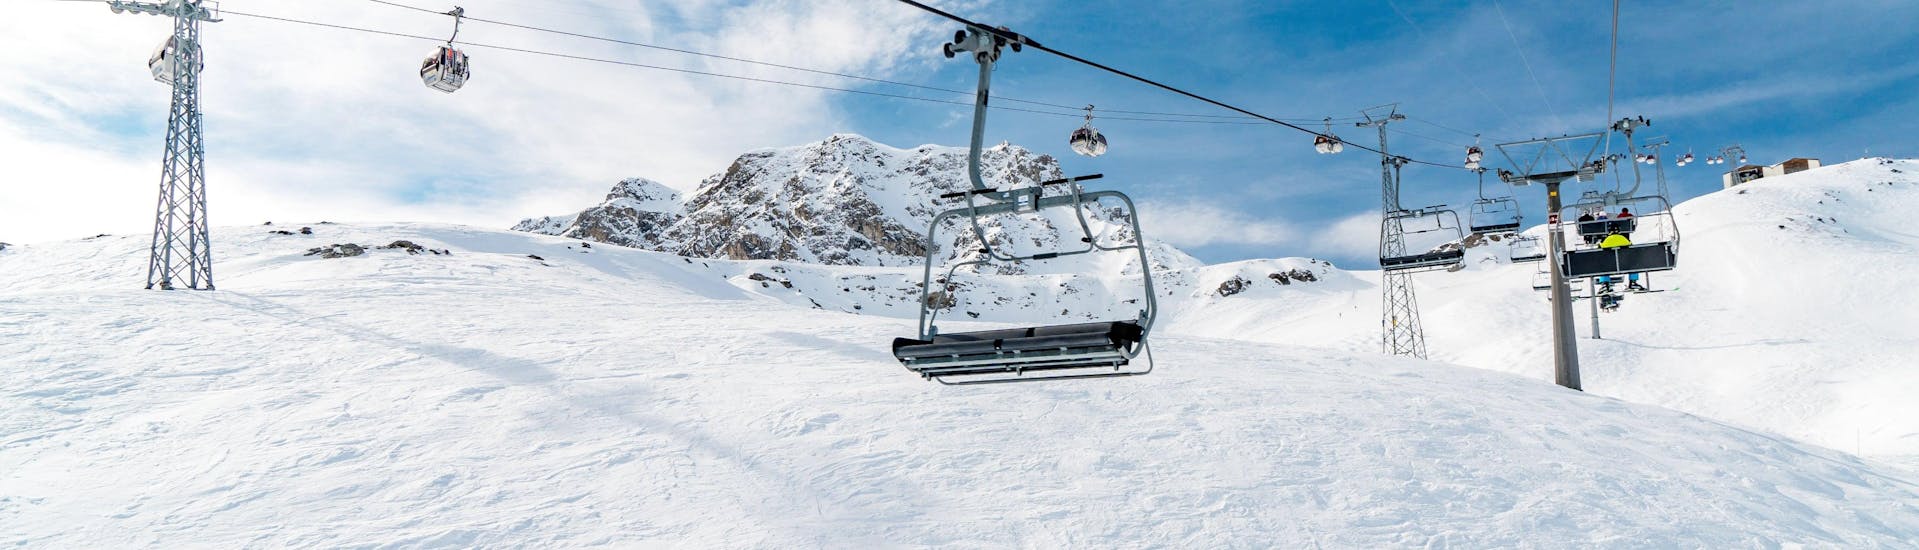 Skilift op de pistes van Arosa, Lenzerheide in Zwitserland op een zonnige dag.